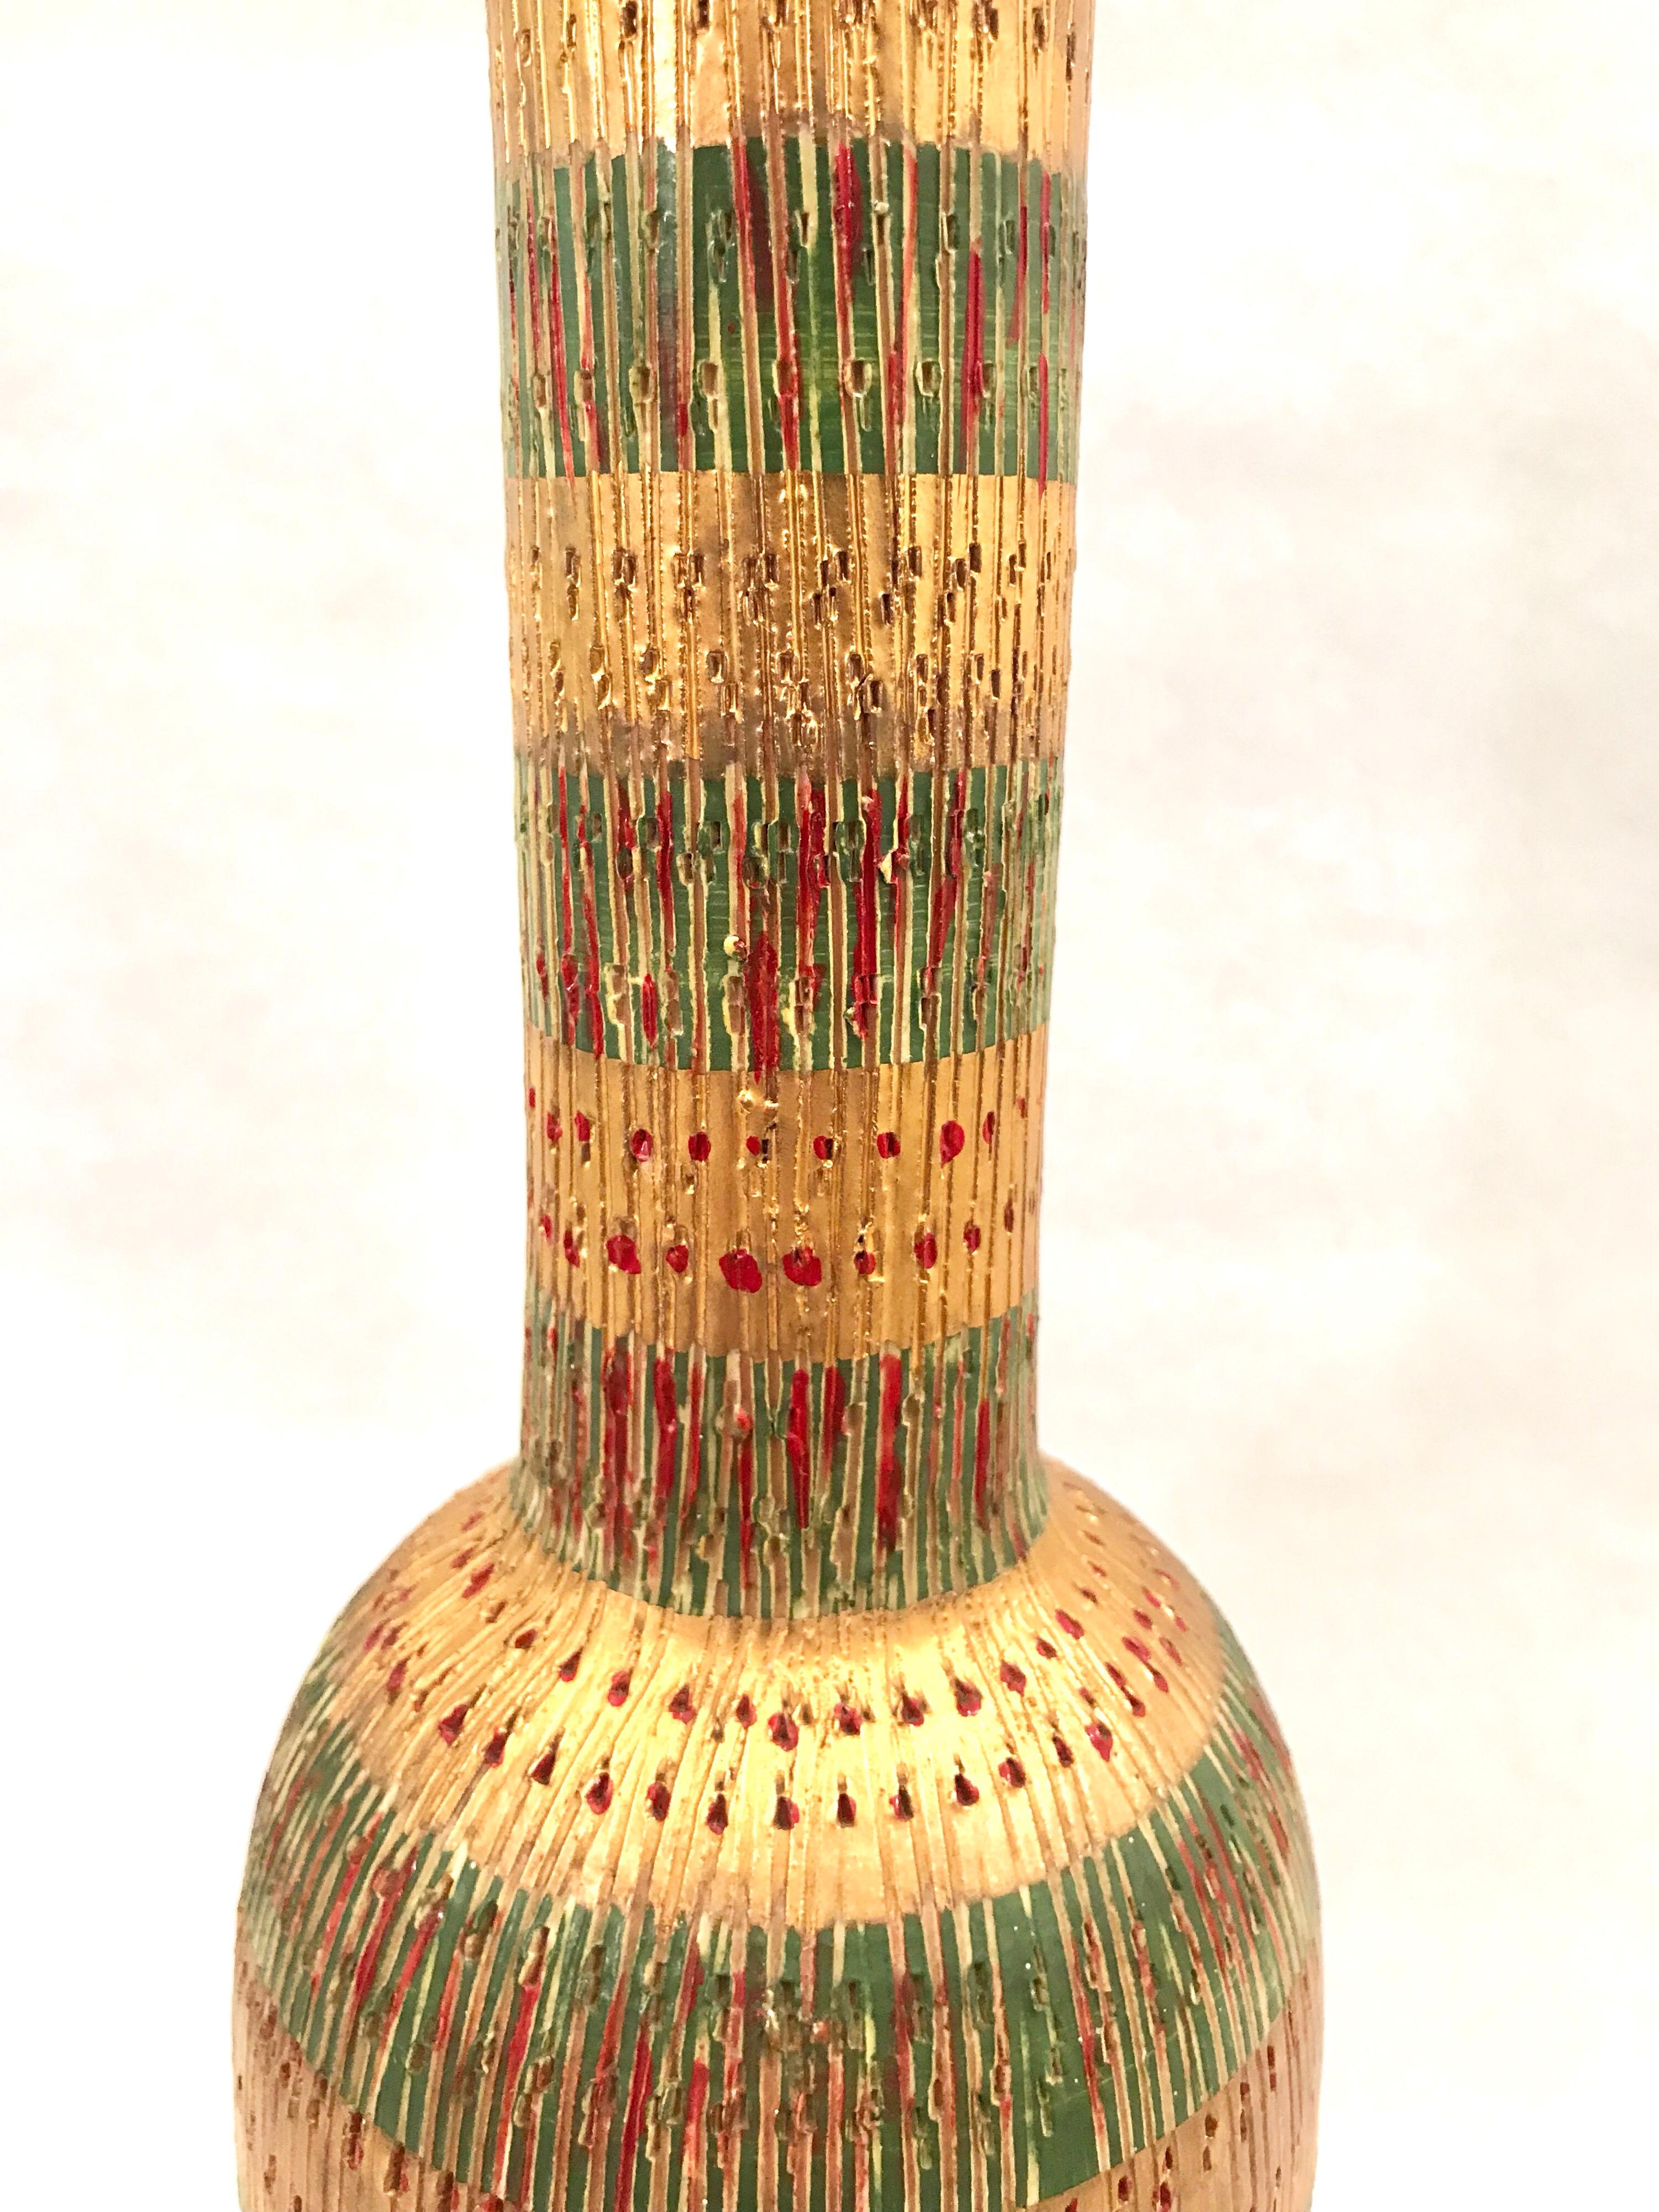 Aldo Londi for Bitossi Art Pottery Bottle Decanter For Sale 3